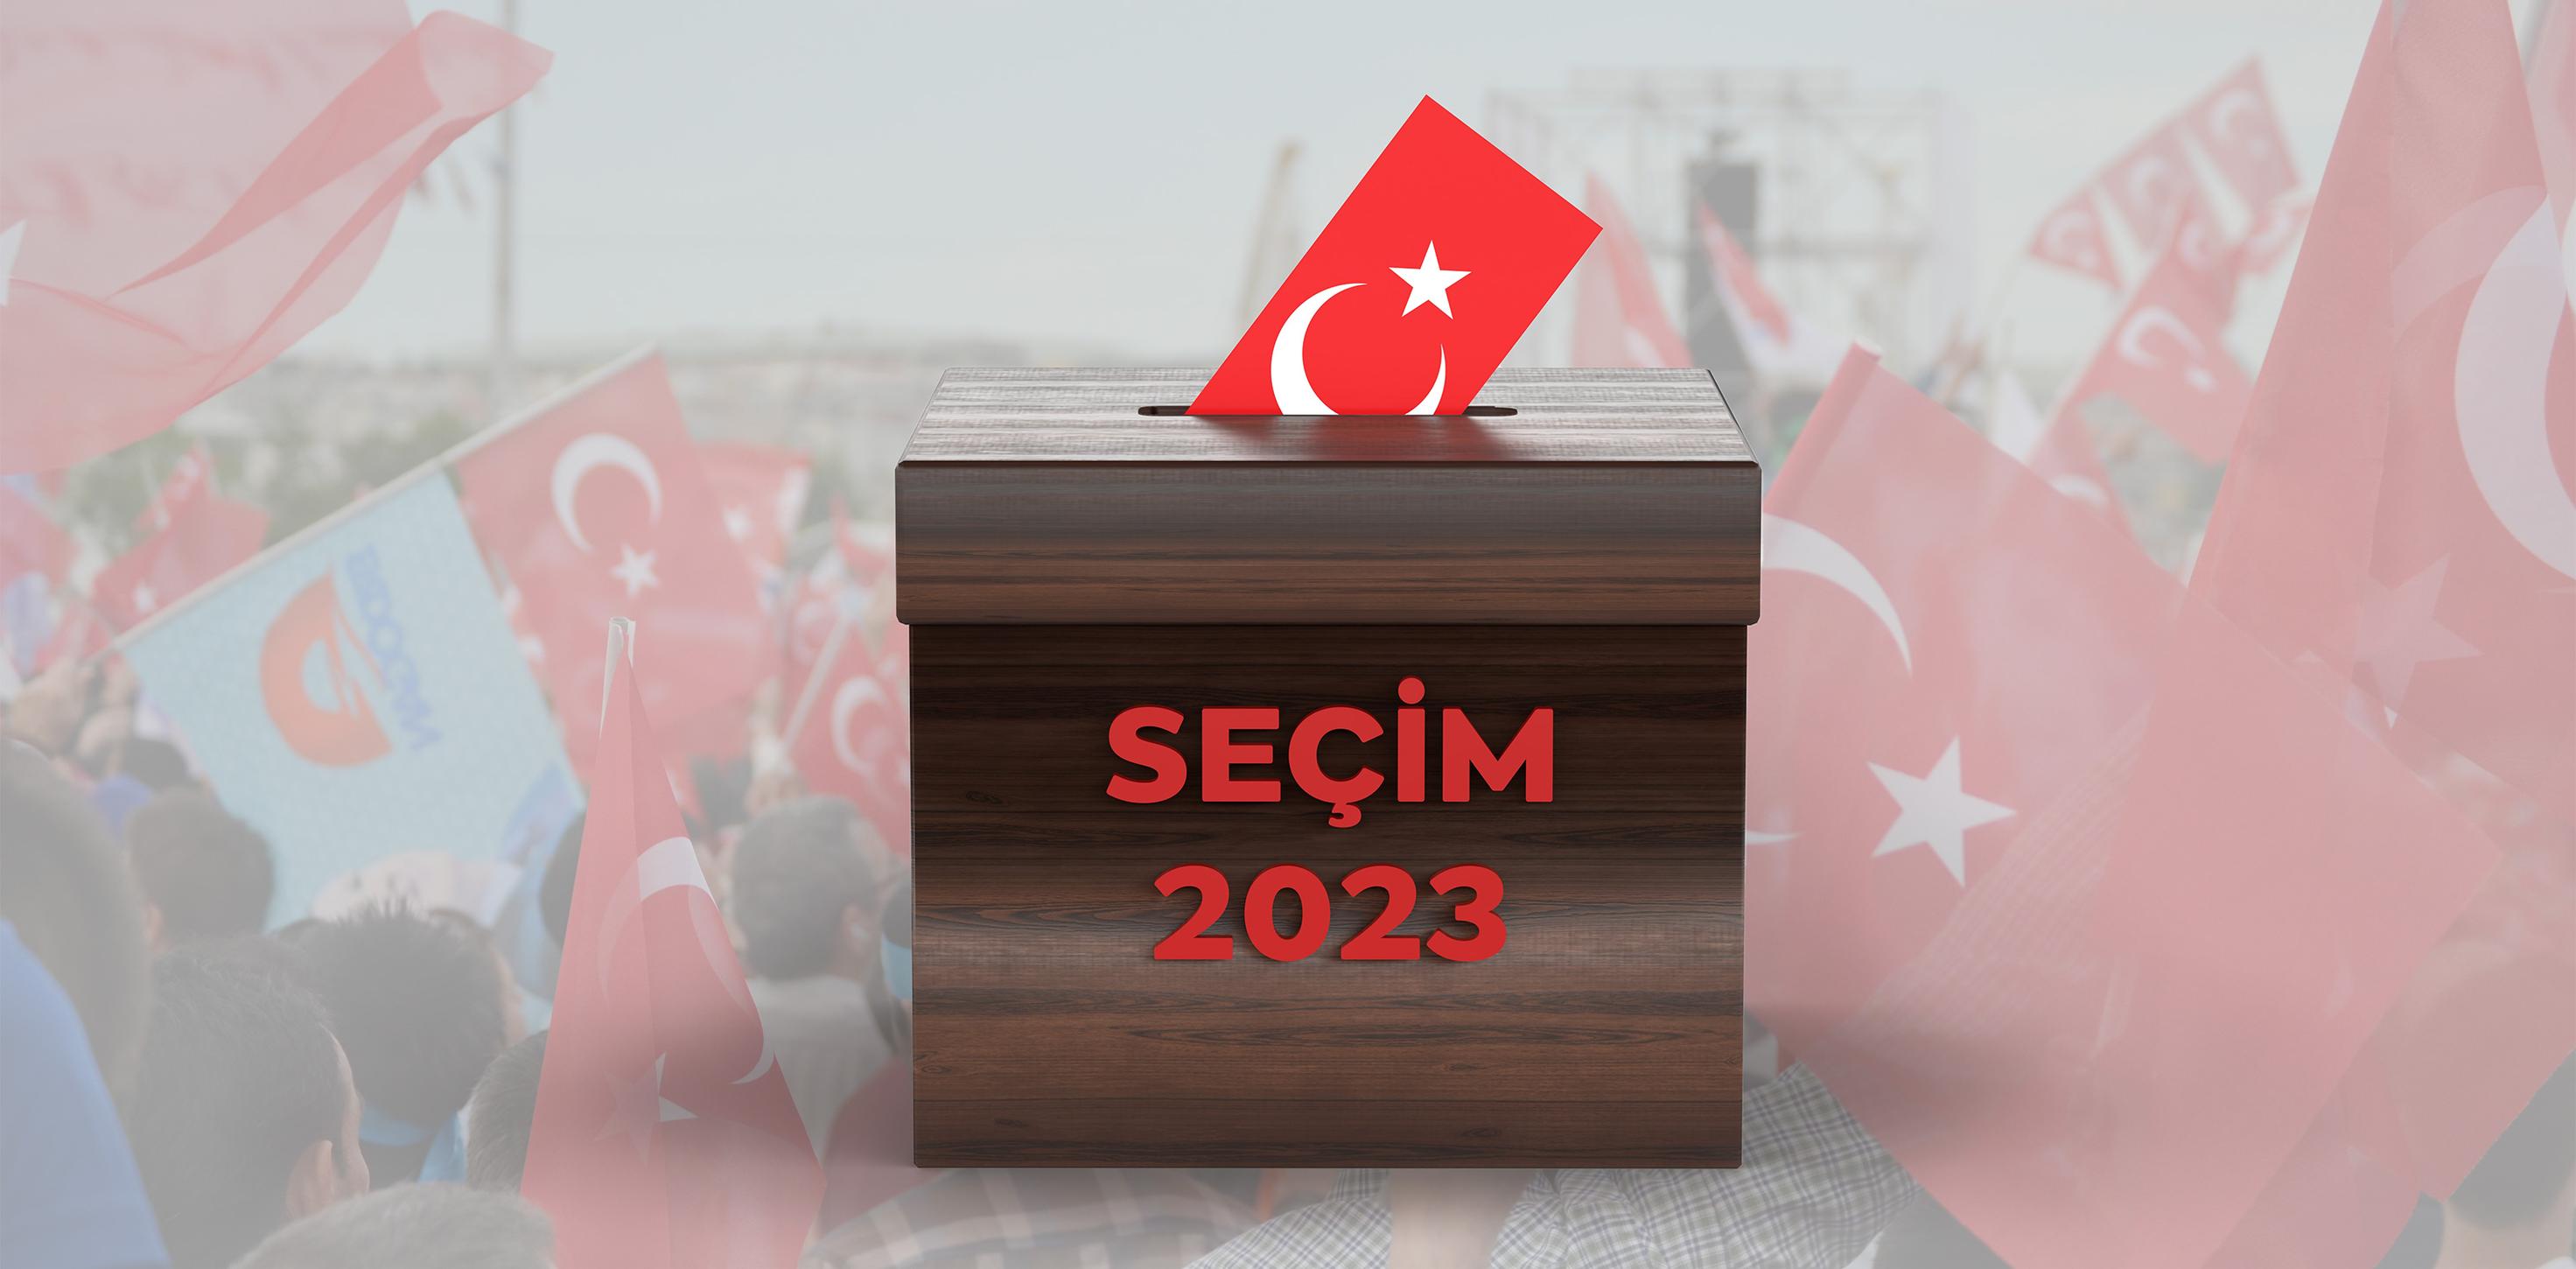 حدود تأثير الأقليات في الانتخابات التركية المقبلة